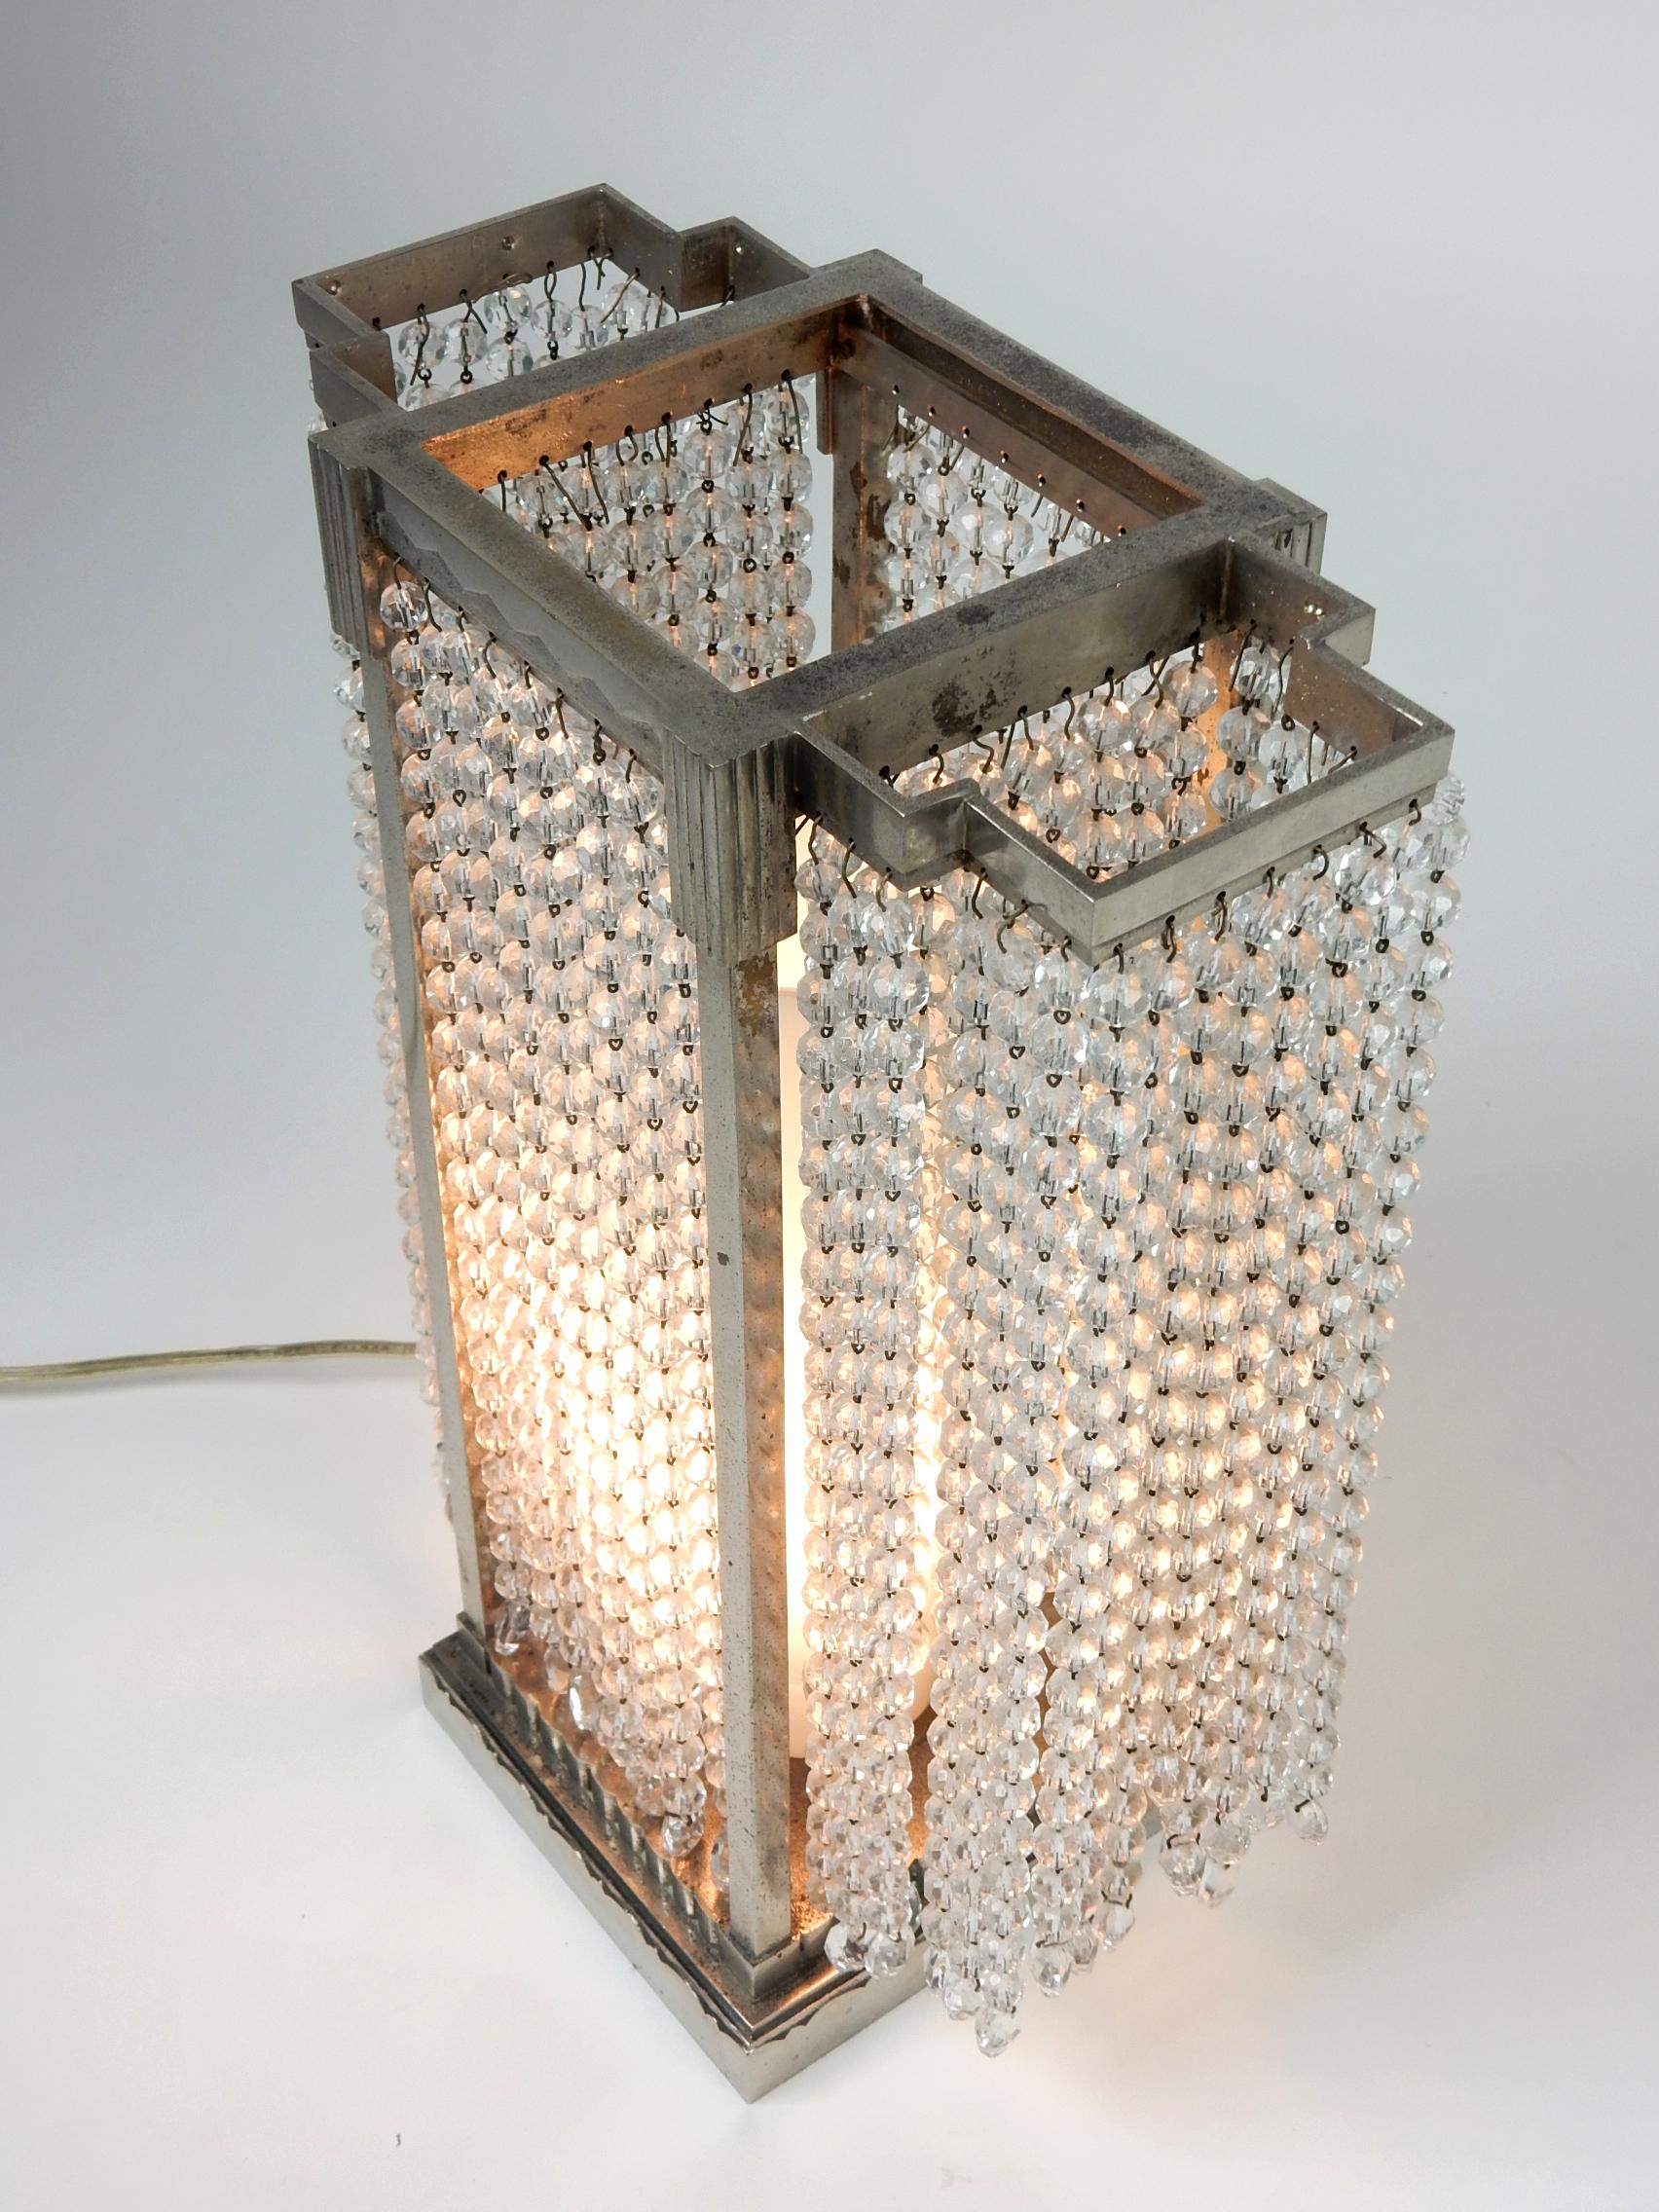 Incroyable lampe de table des années 1930 en nickel argenté et perles de verre.
Cadre stylisé du gratte-ciel Art déco. Douille à une ampoule avec cheminée en verre de lait.
Seule la marque du fabricant ou du dessin est 